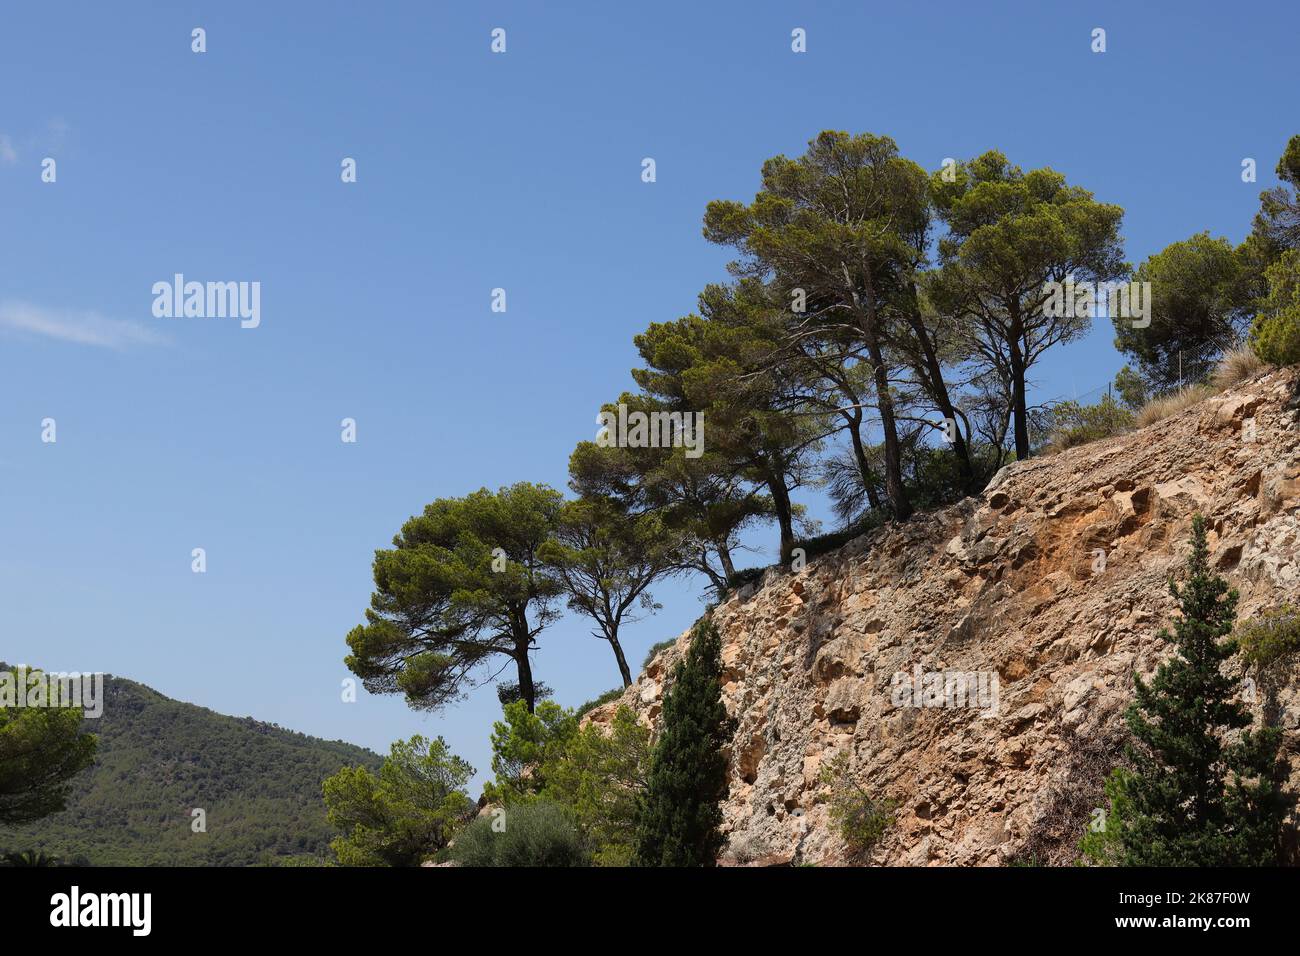 Vue d'un groupe de beaux pins sur une pente rocheuse devant un ciel bleu clair, vue d'en dessous, espace copie, Majorque, Espagne Banque D'Images